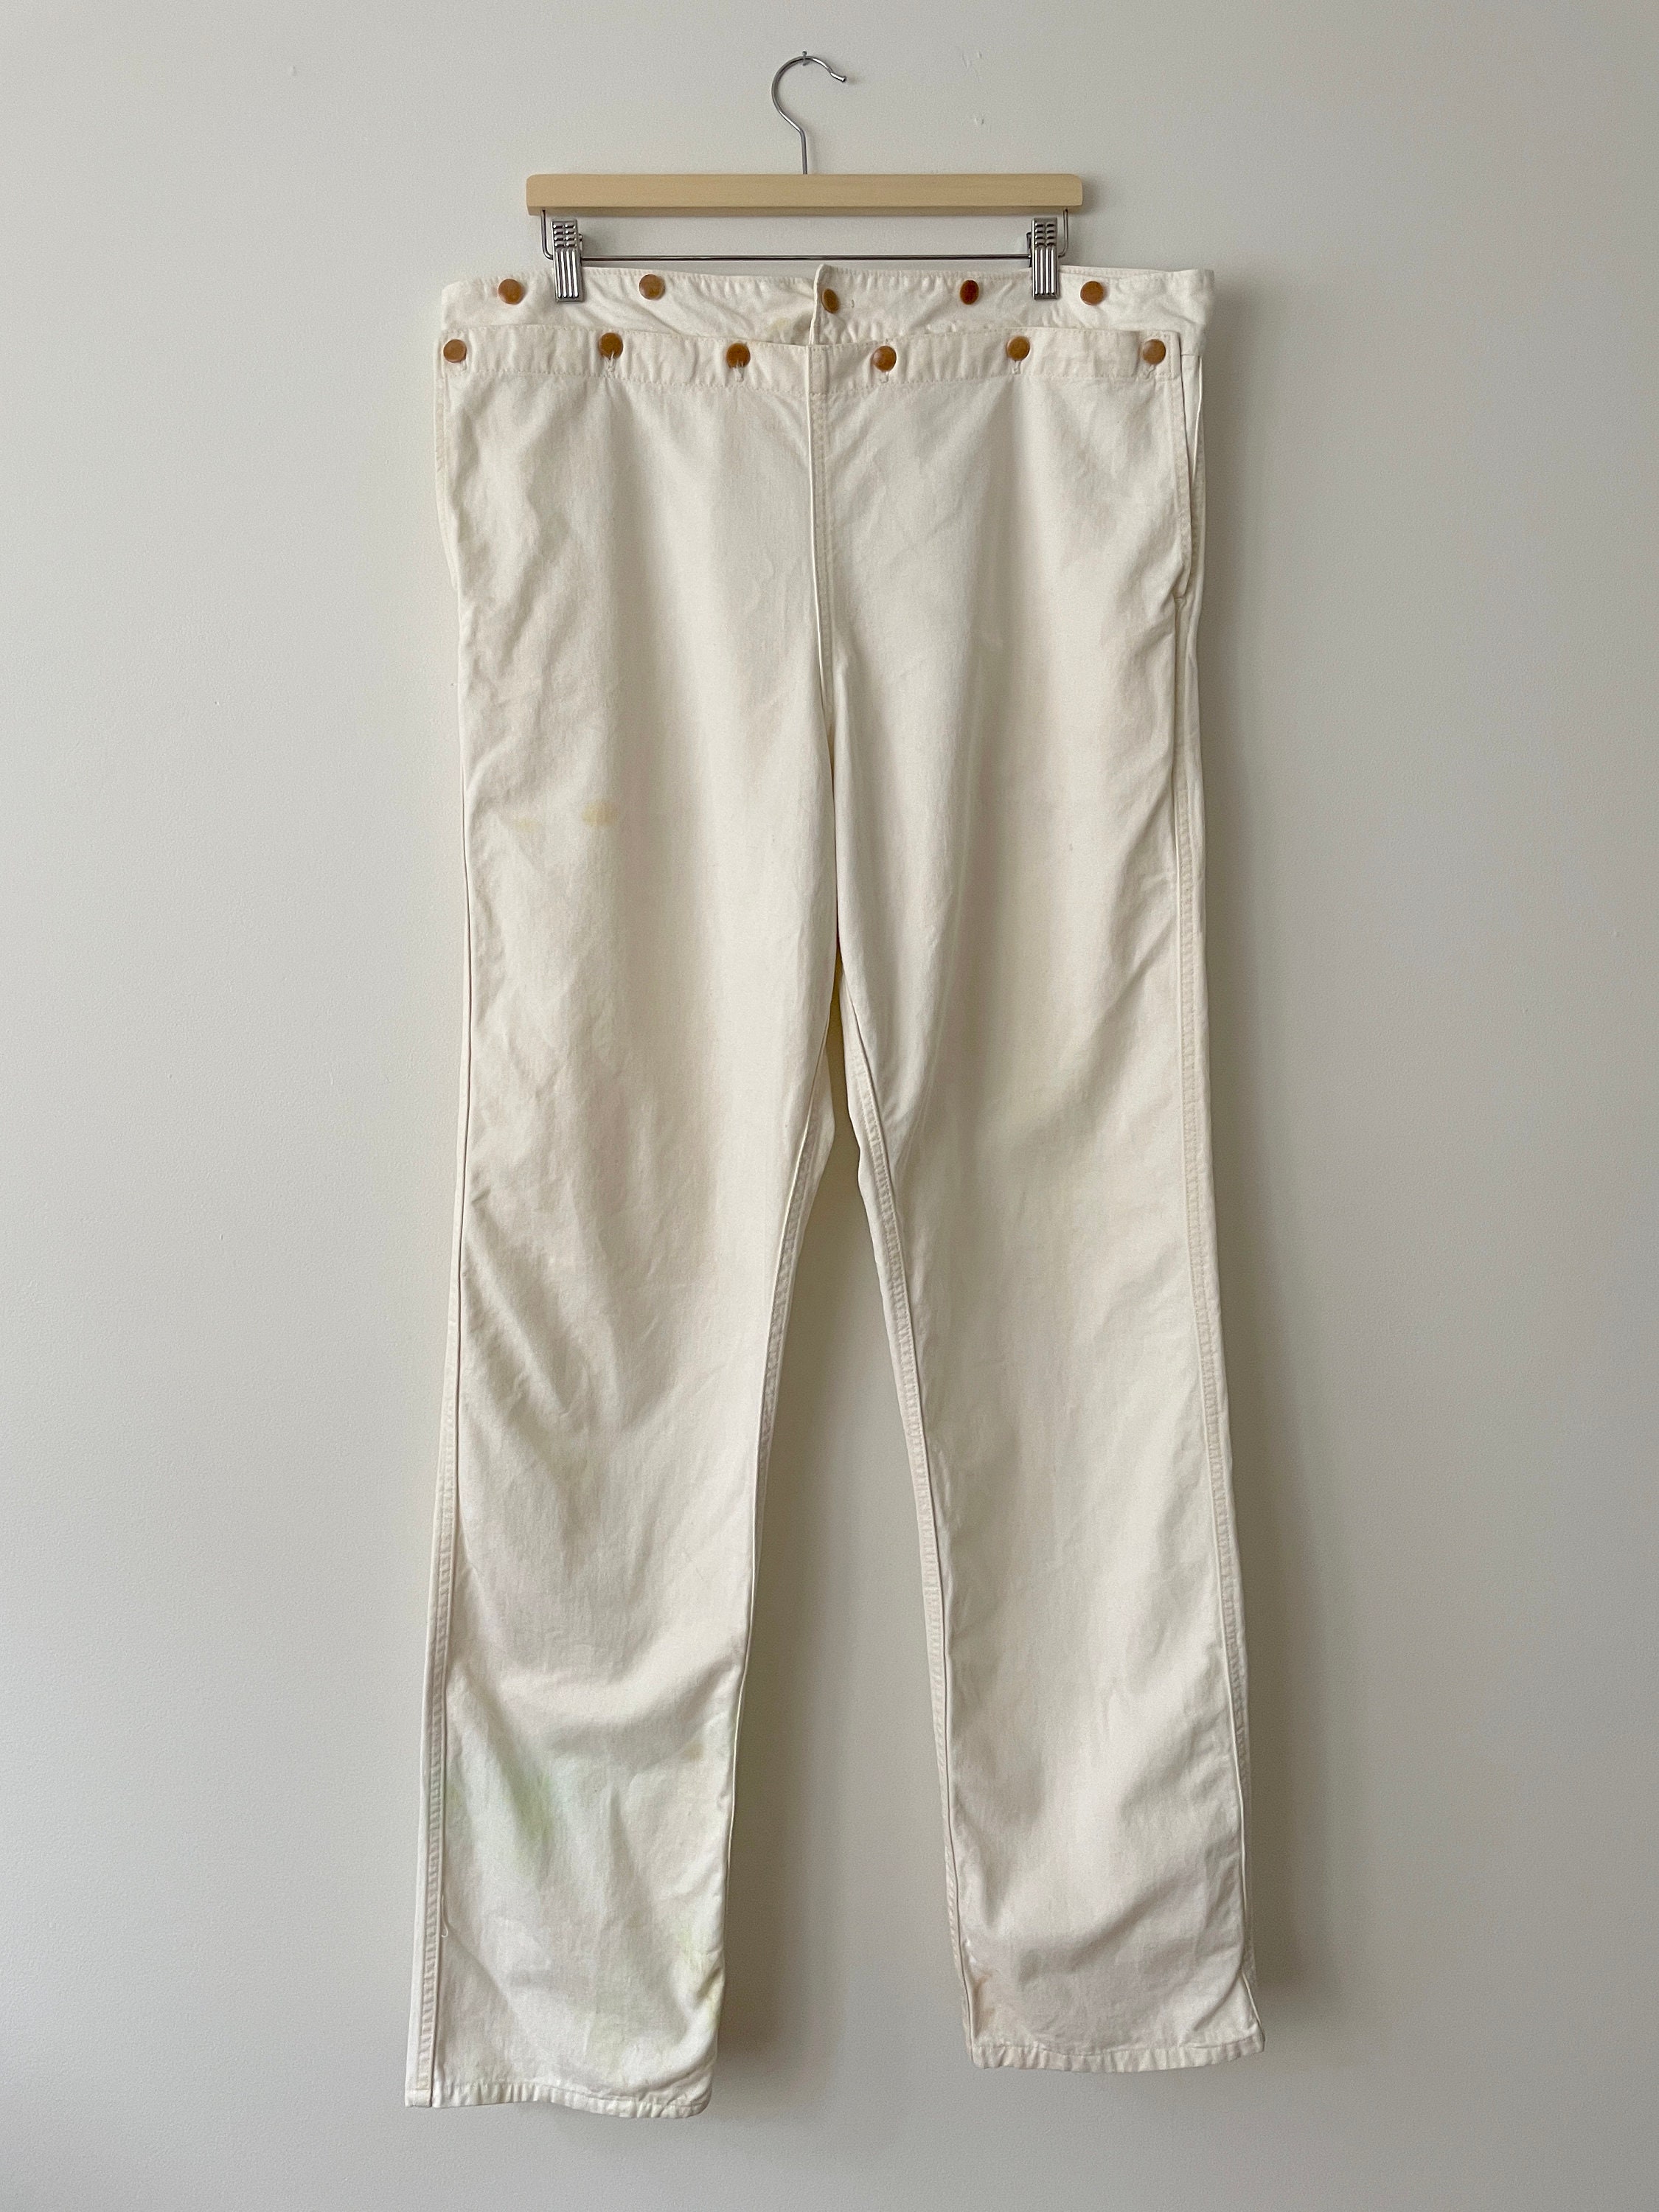 Vintage Sailor Pants 1940s White Canvas Deck Pants With - Etsy